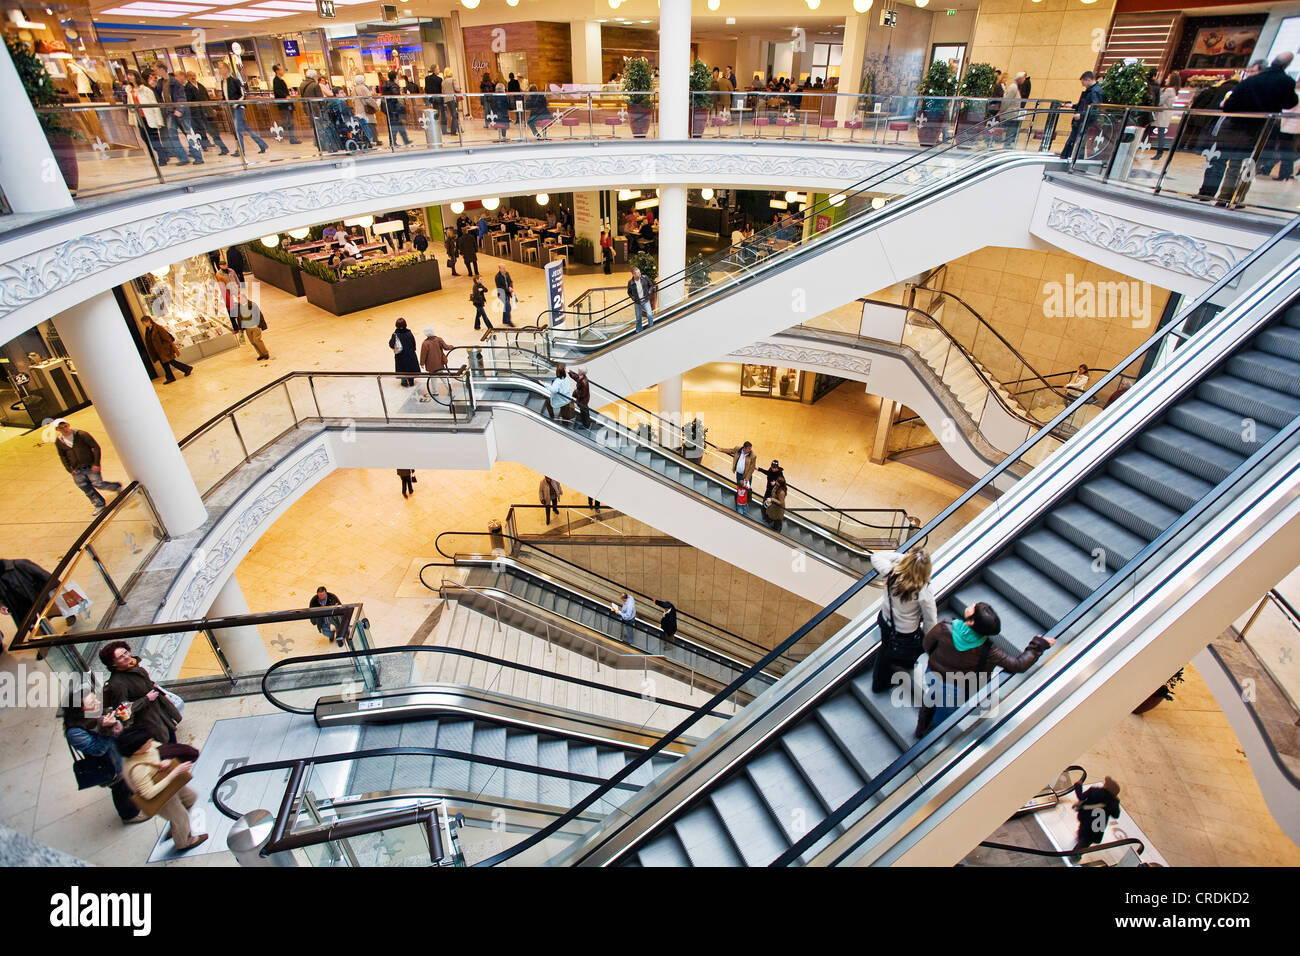 Innenansicht des Einkaufszentrums Limbecker Platz der Stadt, Essen,  Ruhrgebiet, Nordrhein-Westfalen, Deutschland Stockfotografie - Alamy